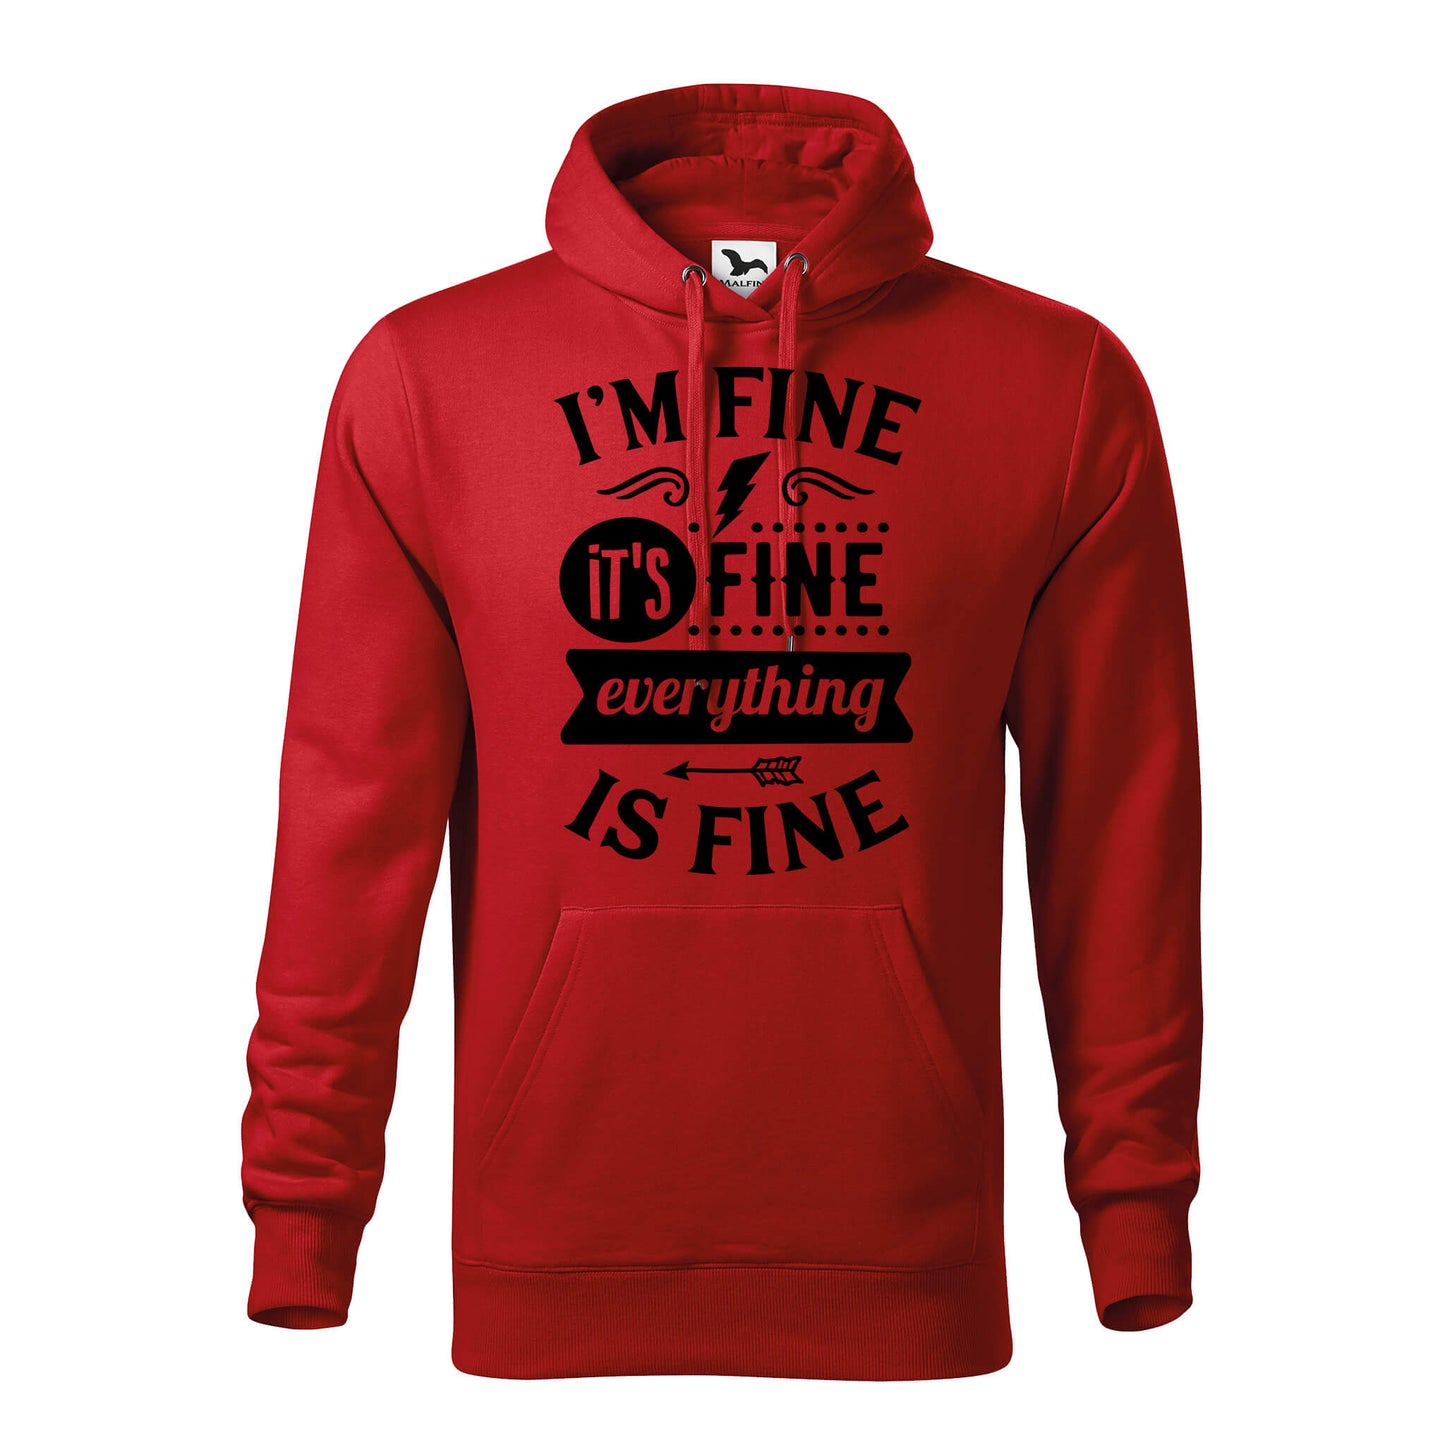 Im fine its fine hoodie - rvdesignprint